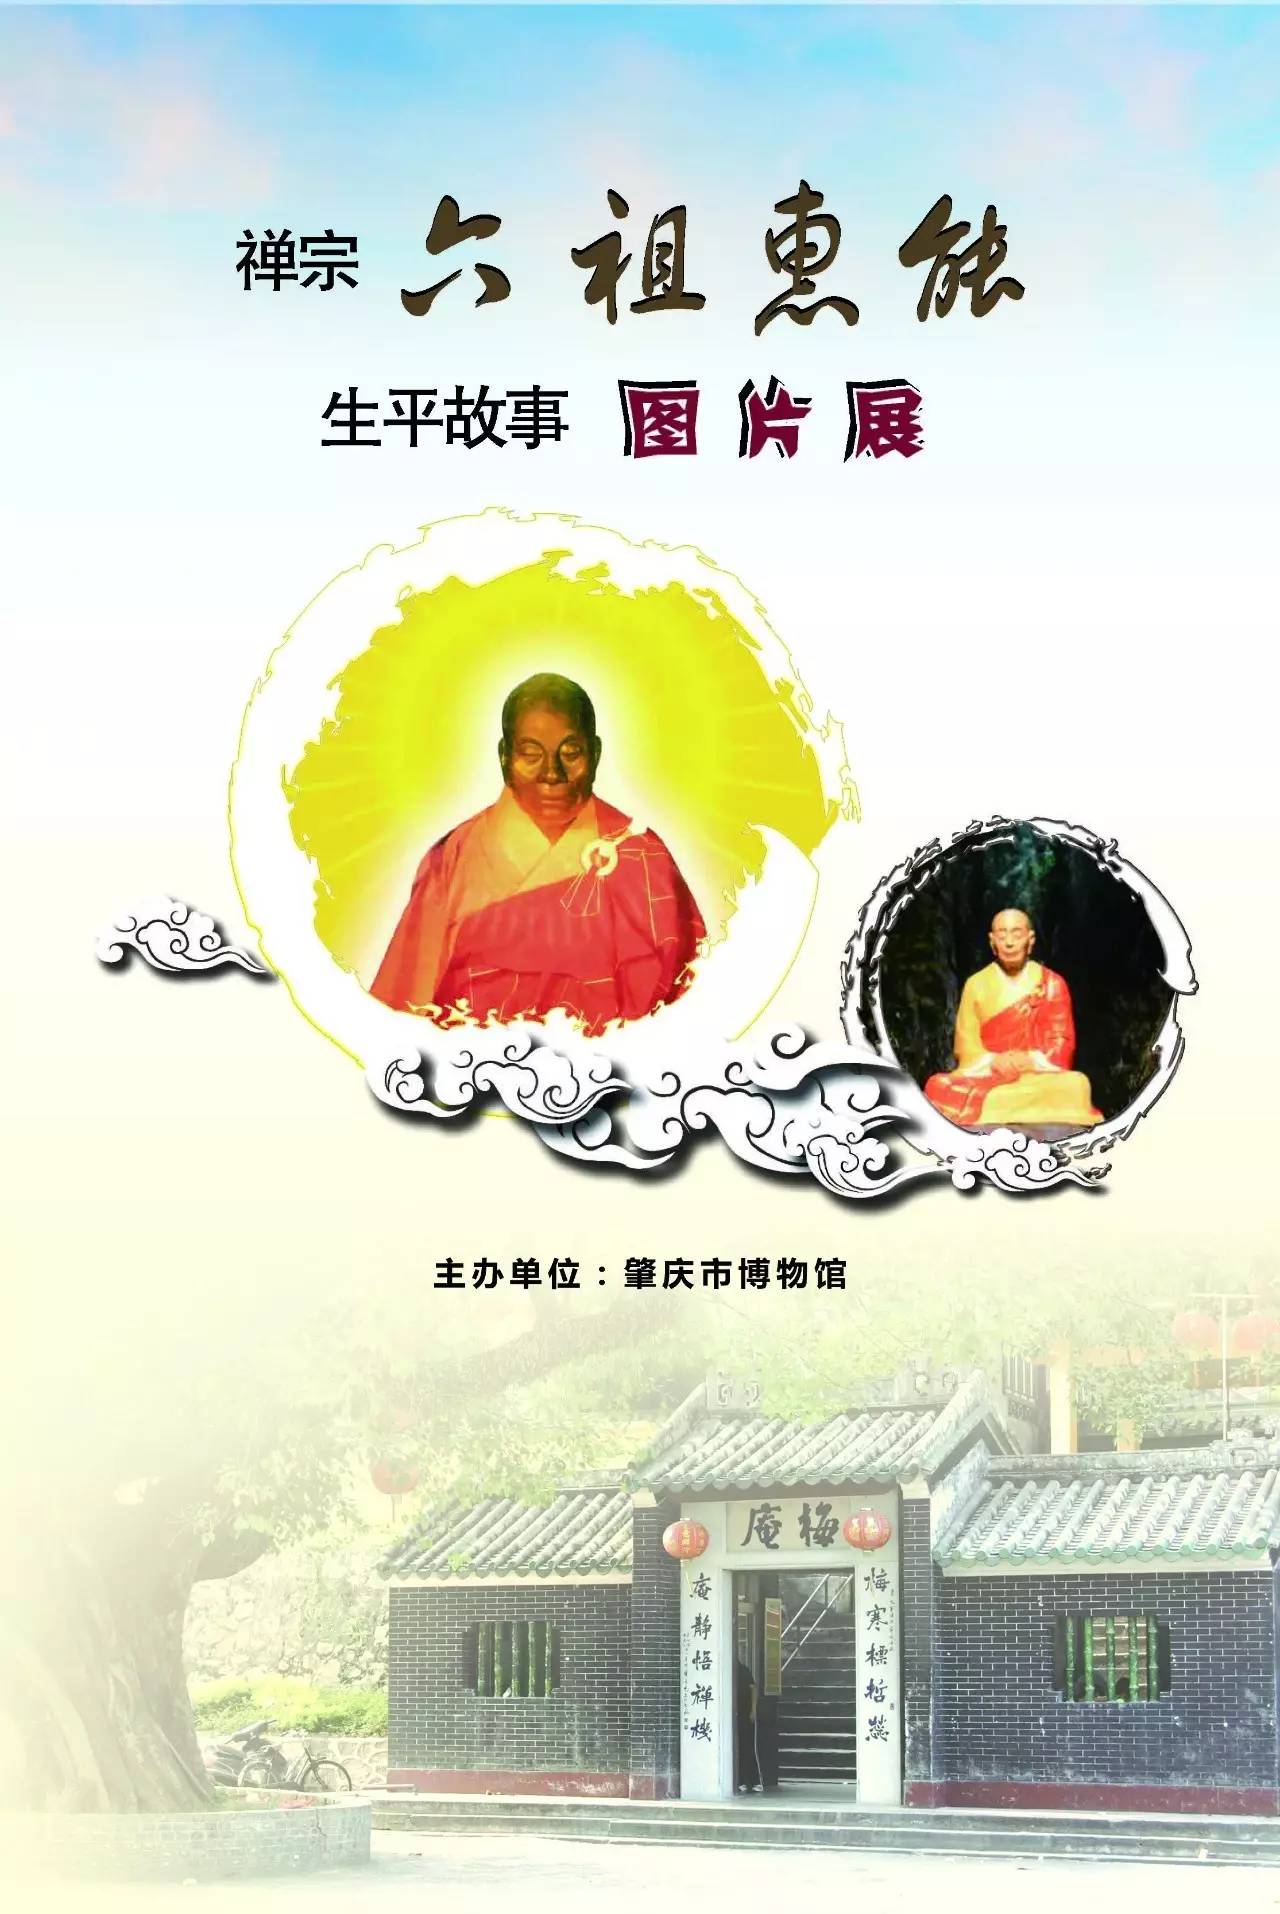 【扩散】禅宗六祖惠能生平故事图片展在怀集县博物馆展出